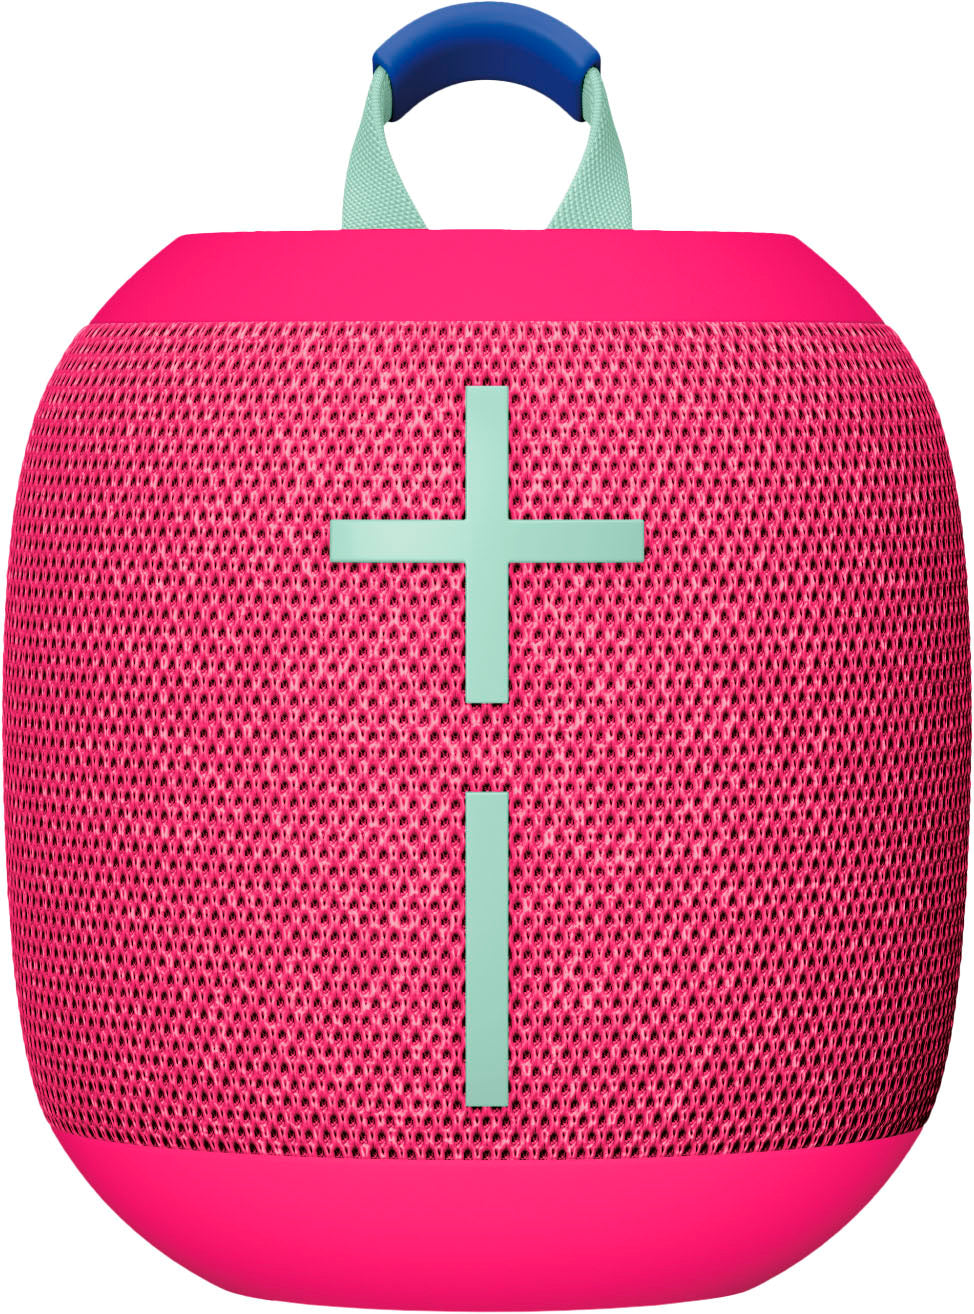 Ultimate Ears - WONDERBOOM 4 Portable Wireless Bluetooth Mini Speaker with Waterproof, Dustproof and Floatable design - Hyper Pink_0